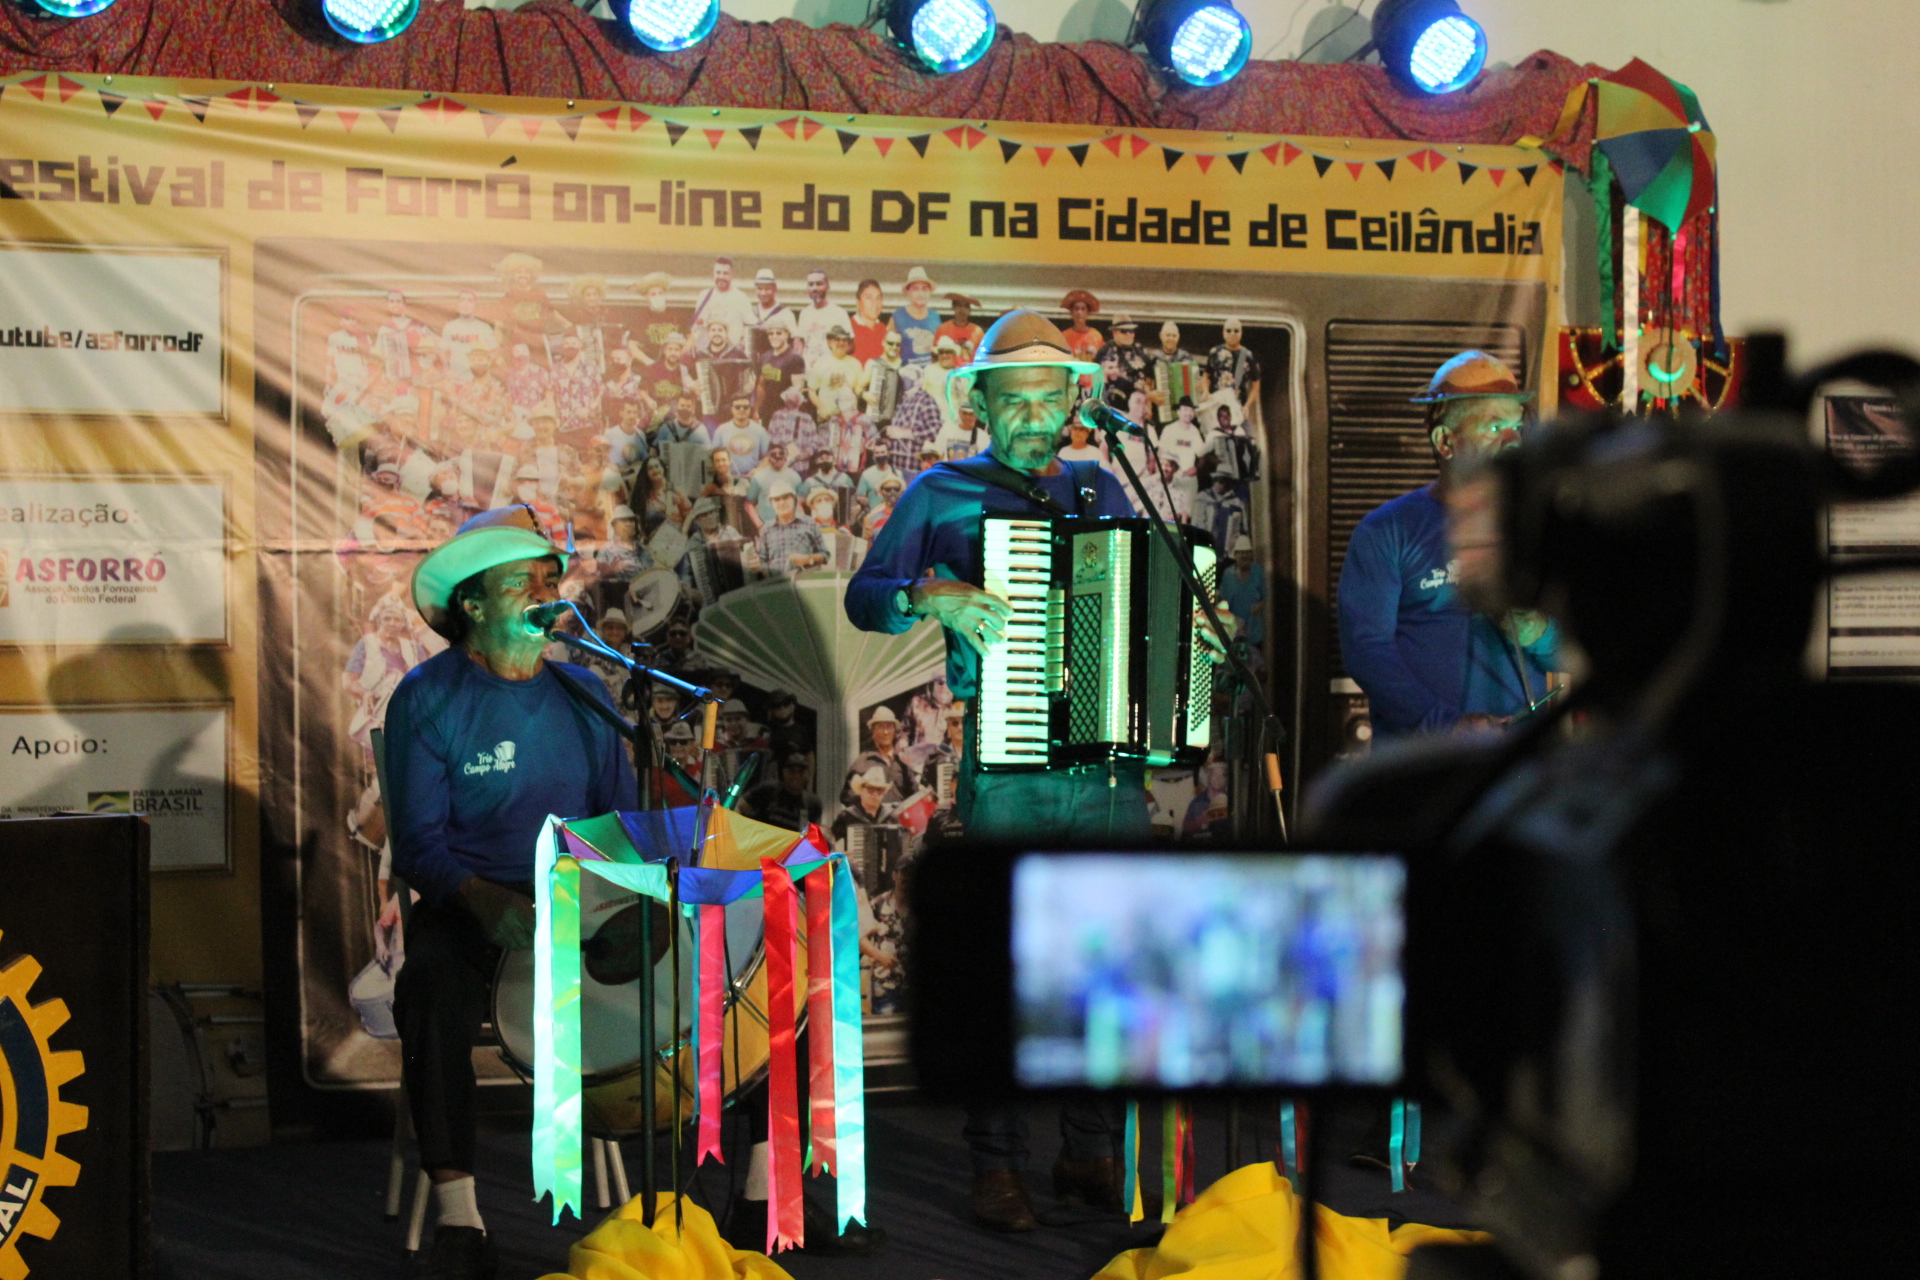 1º Festival de Forró Online do Distrito Federal na Cidade de Ceilândia estreia com programação intensa